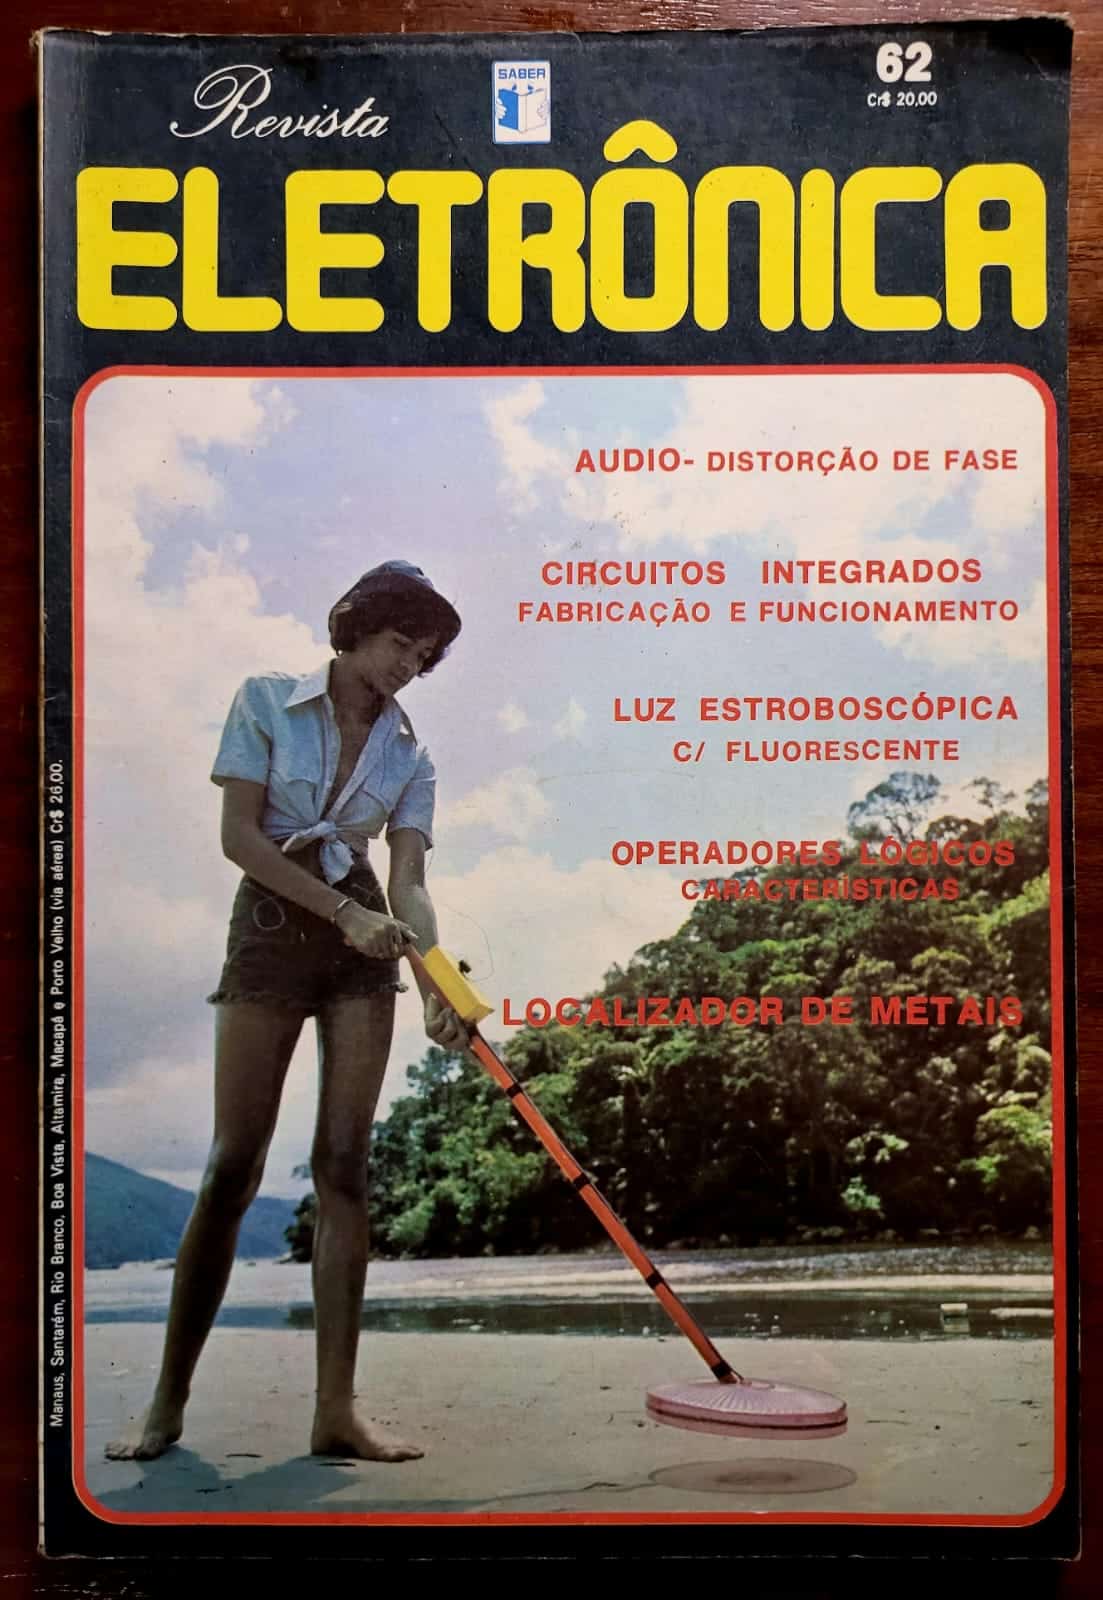 Revista Saber Eletronica No 062 1 Casa do Colecionador